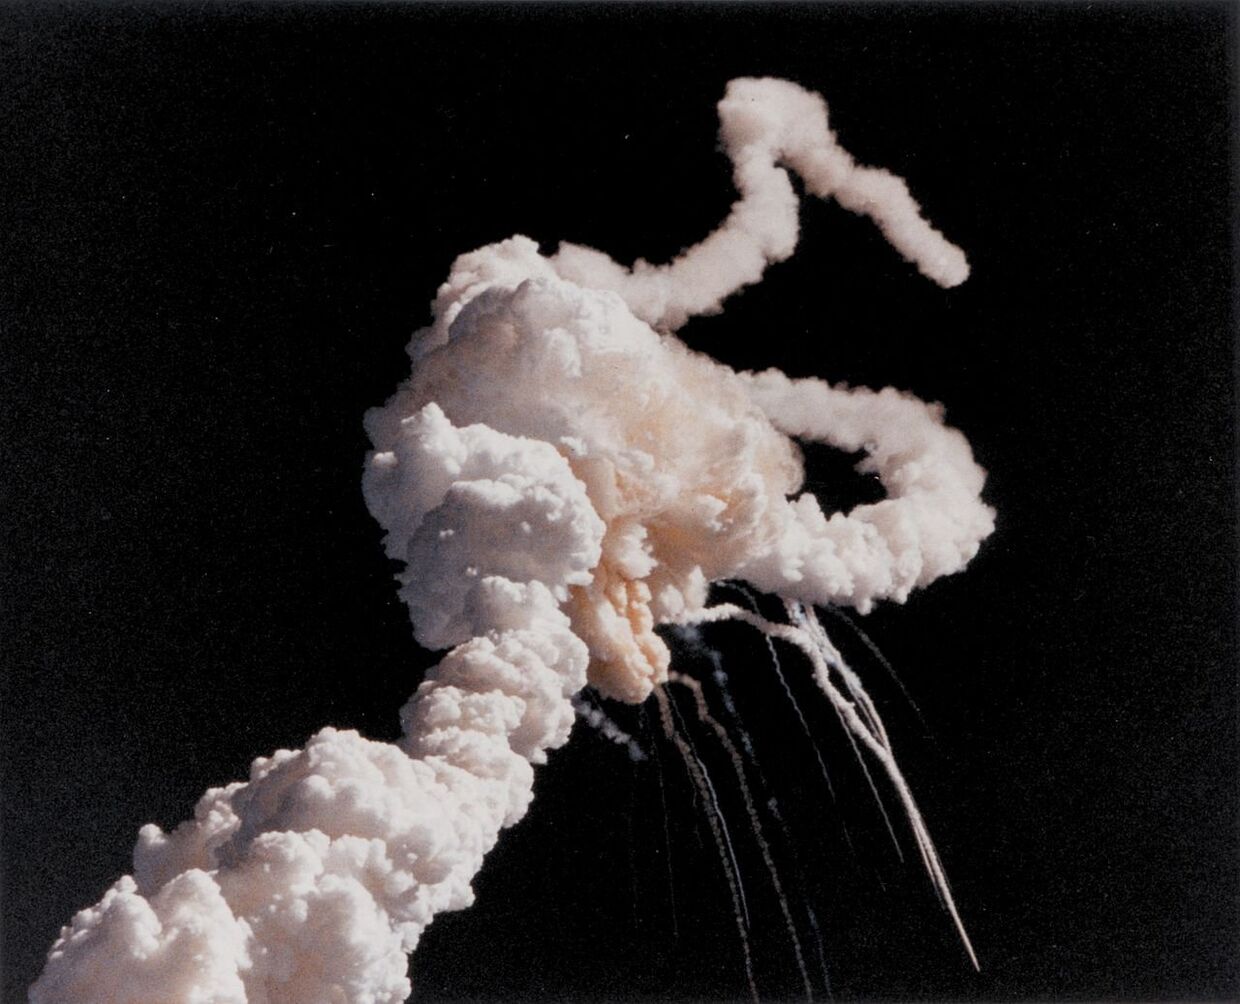 Космический челнок «Челленджер» взрывается вскоре после запуска 28 января 1986 года